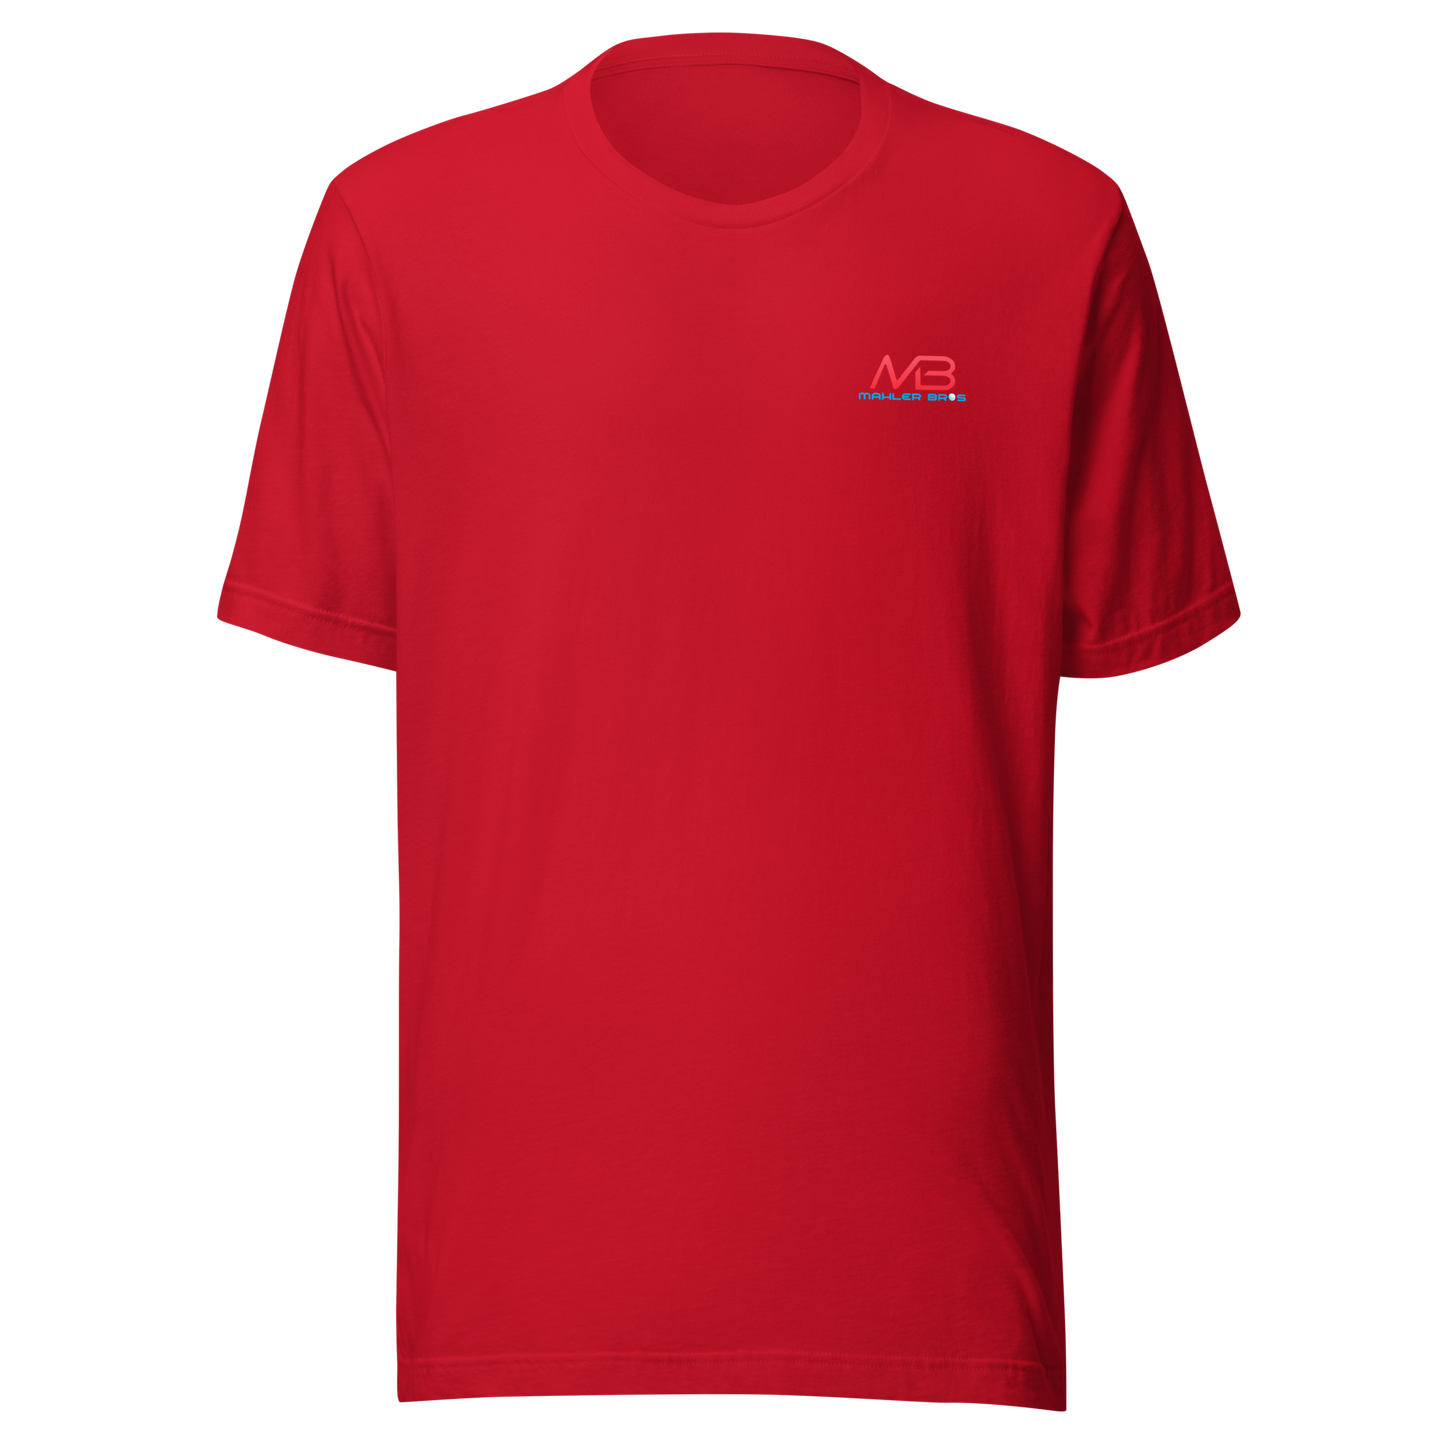 American Golf Tee Shirt American Golf Tee Shirt